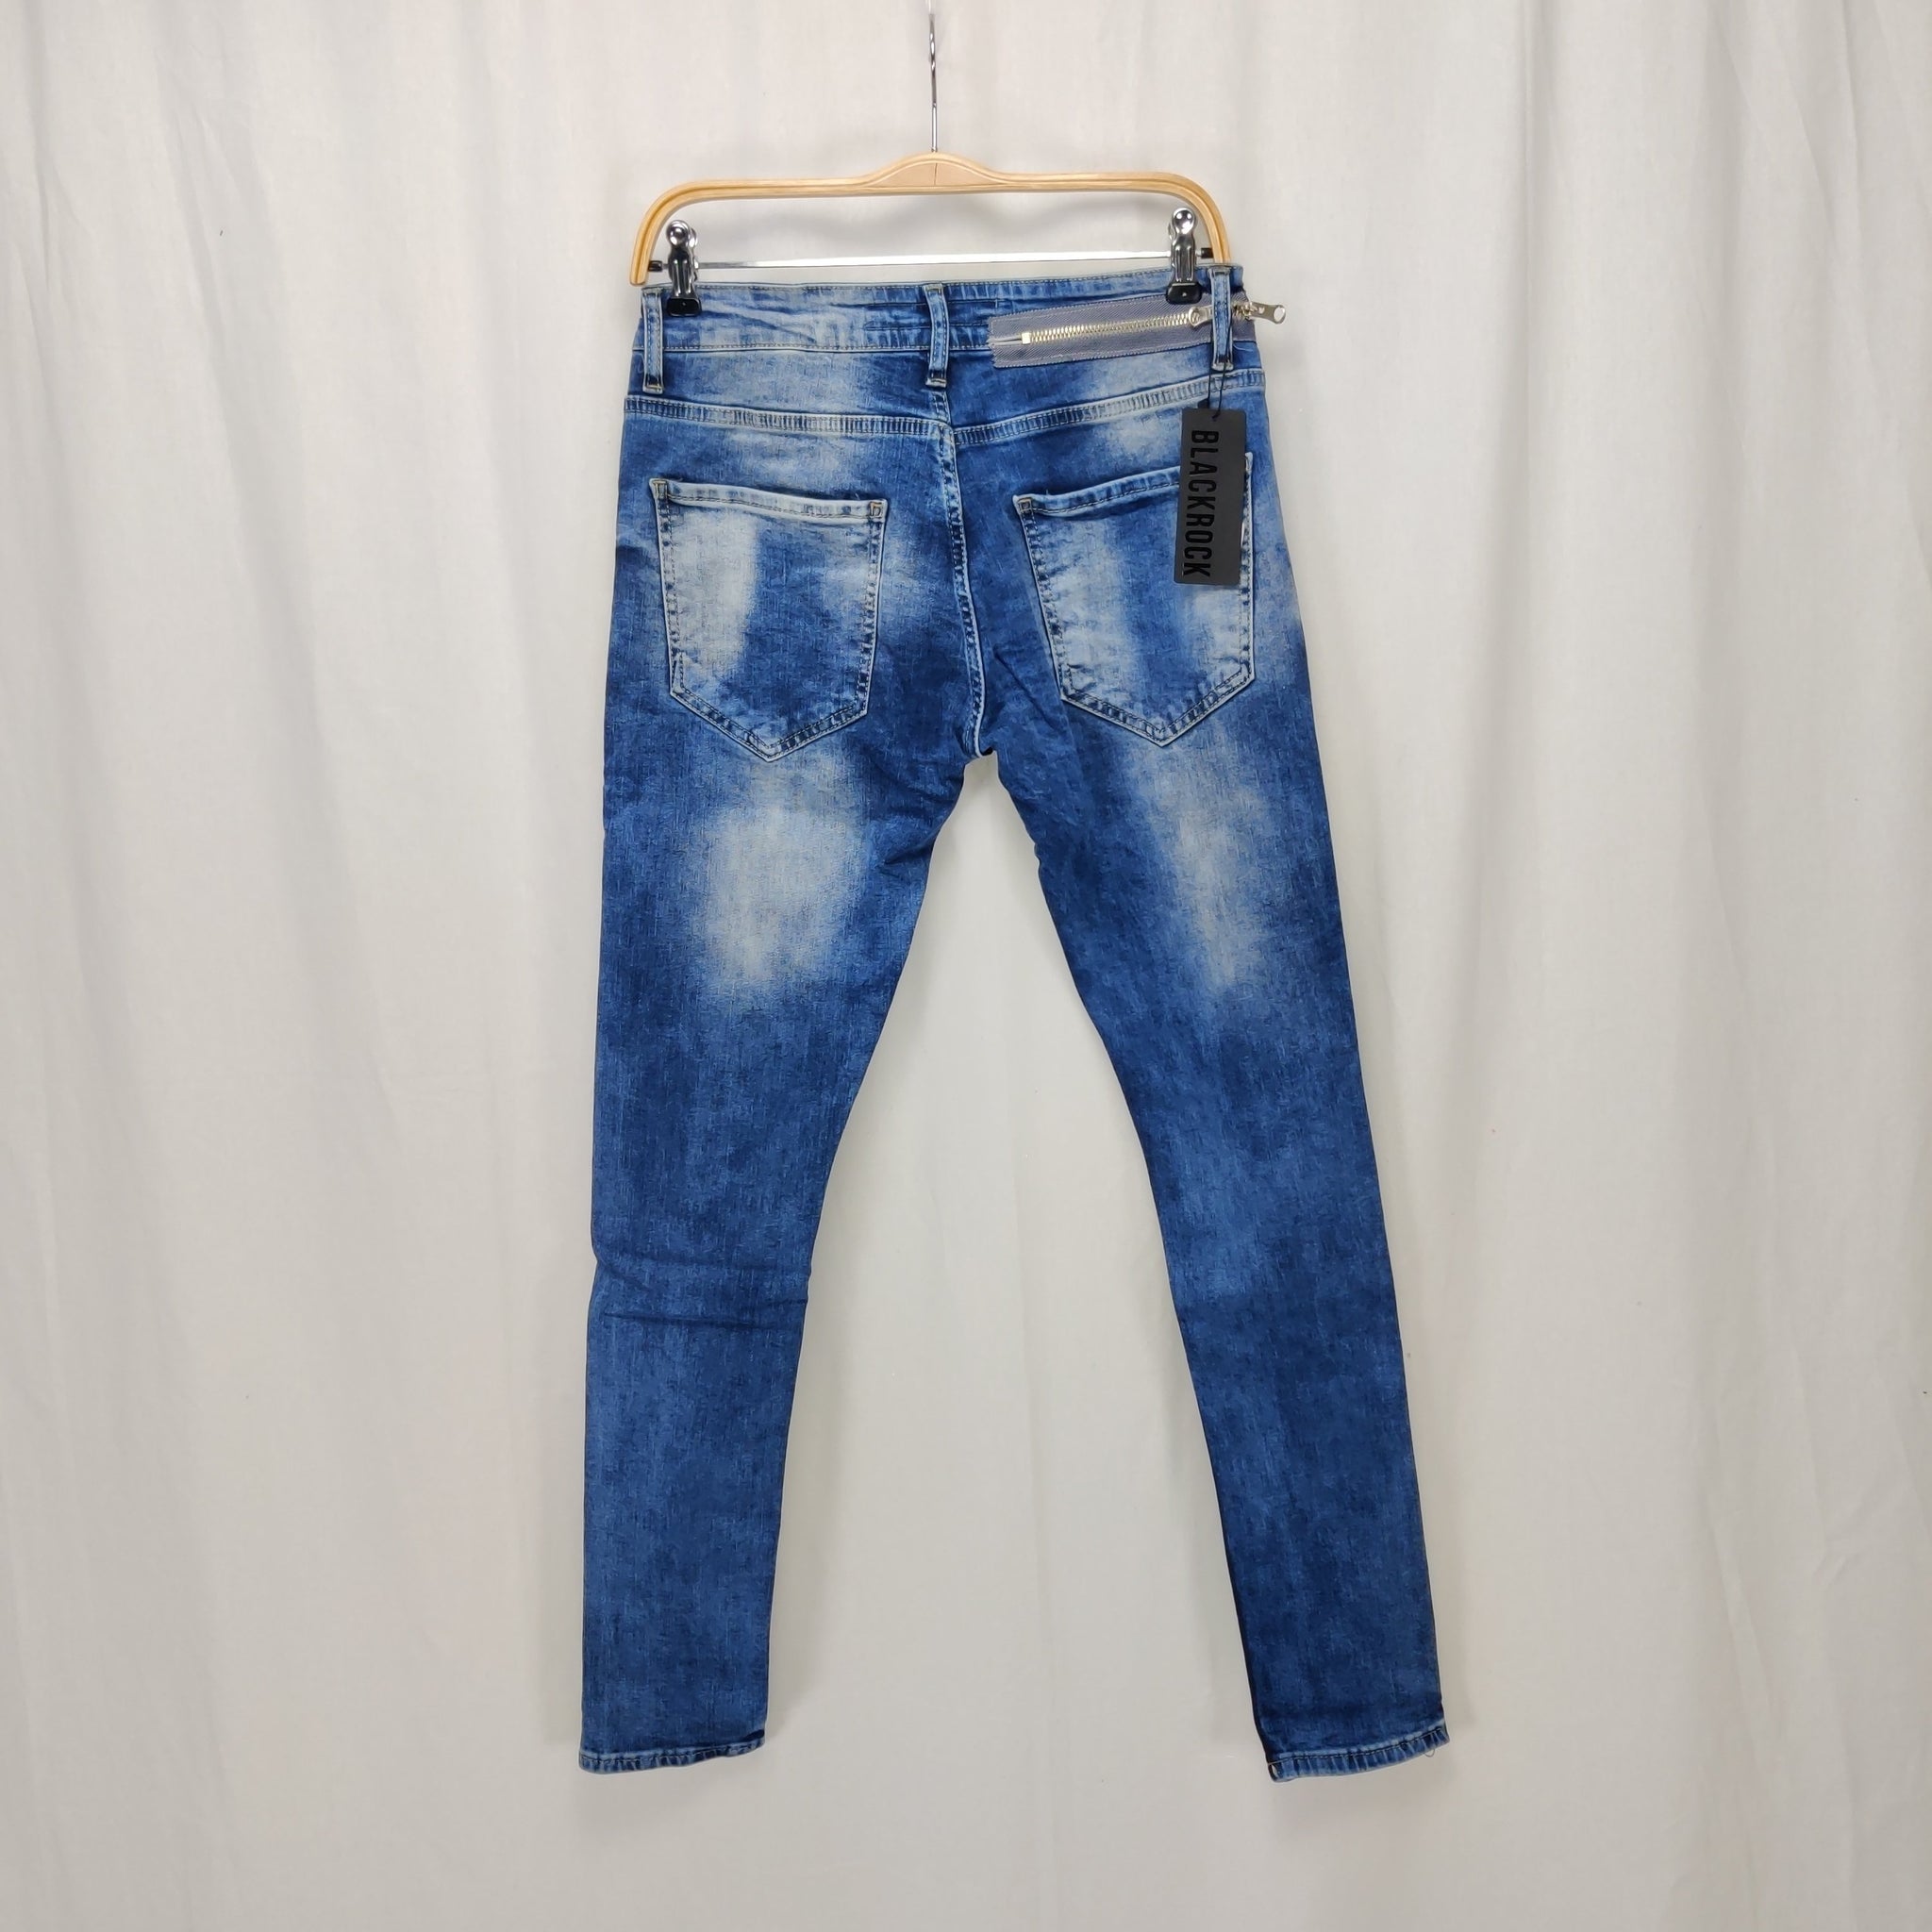 åbenbaring Tredive Compulsion Blå med zipper Jeans, Cowboybukser med huller – 1000 Ting